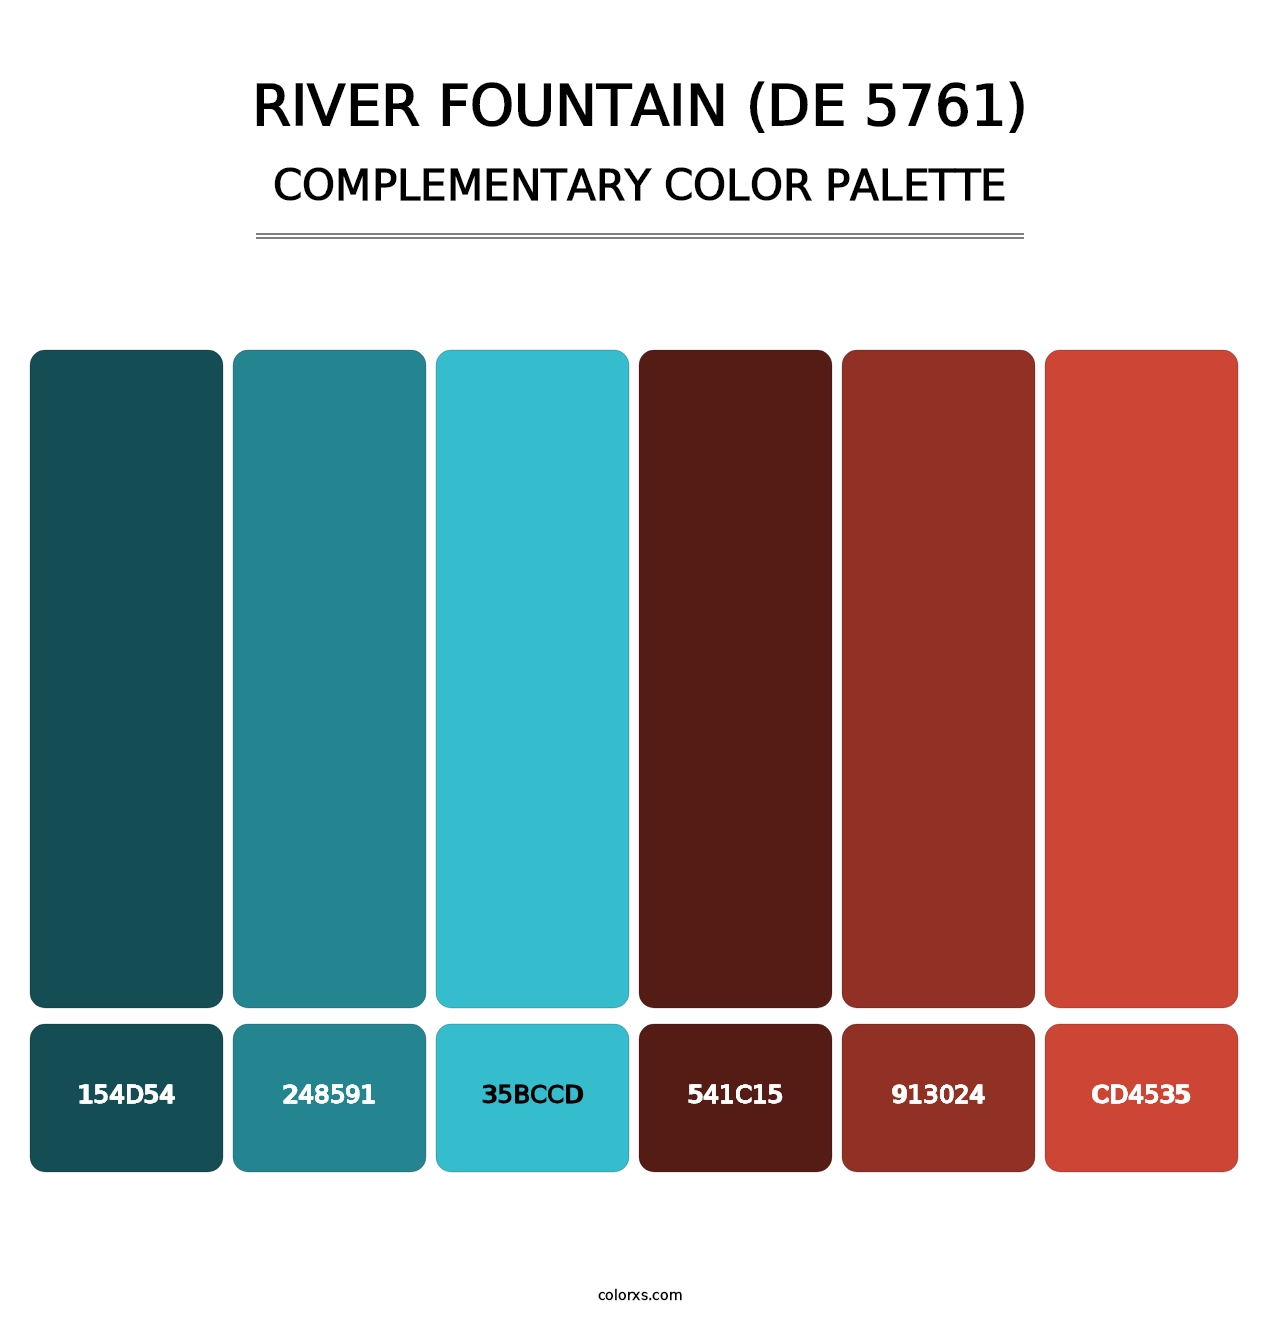 River Fountain (DE 5761) - Complementary Color Palette